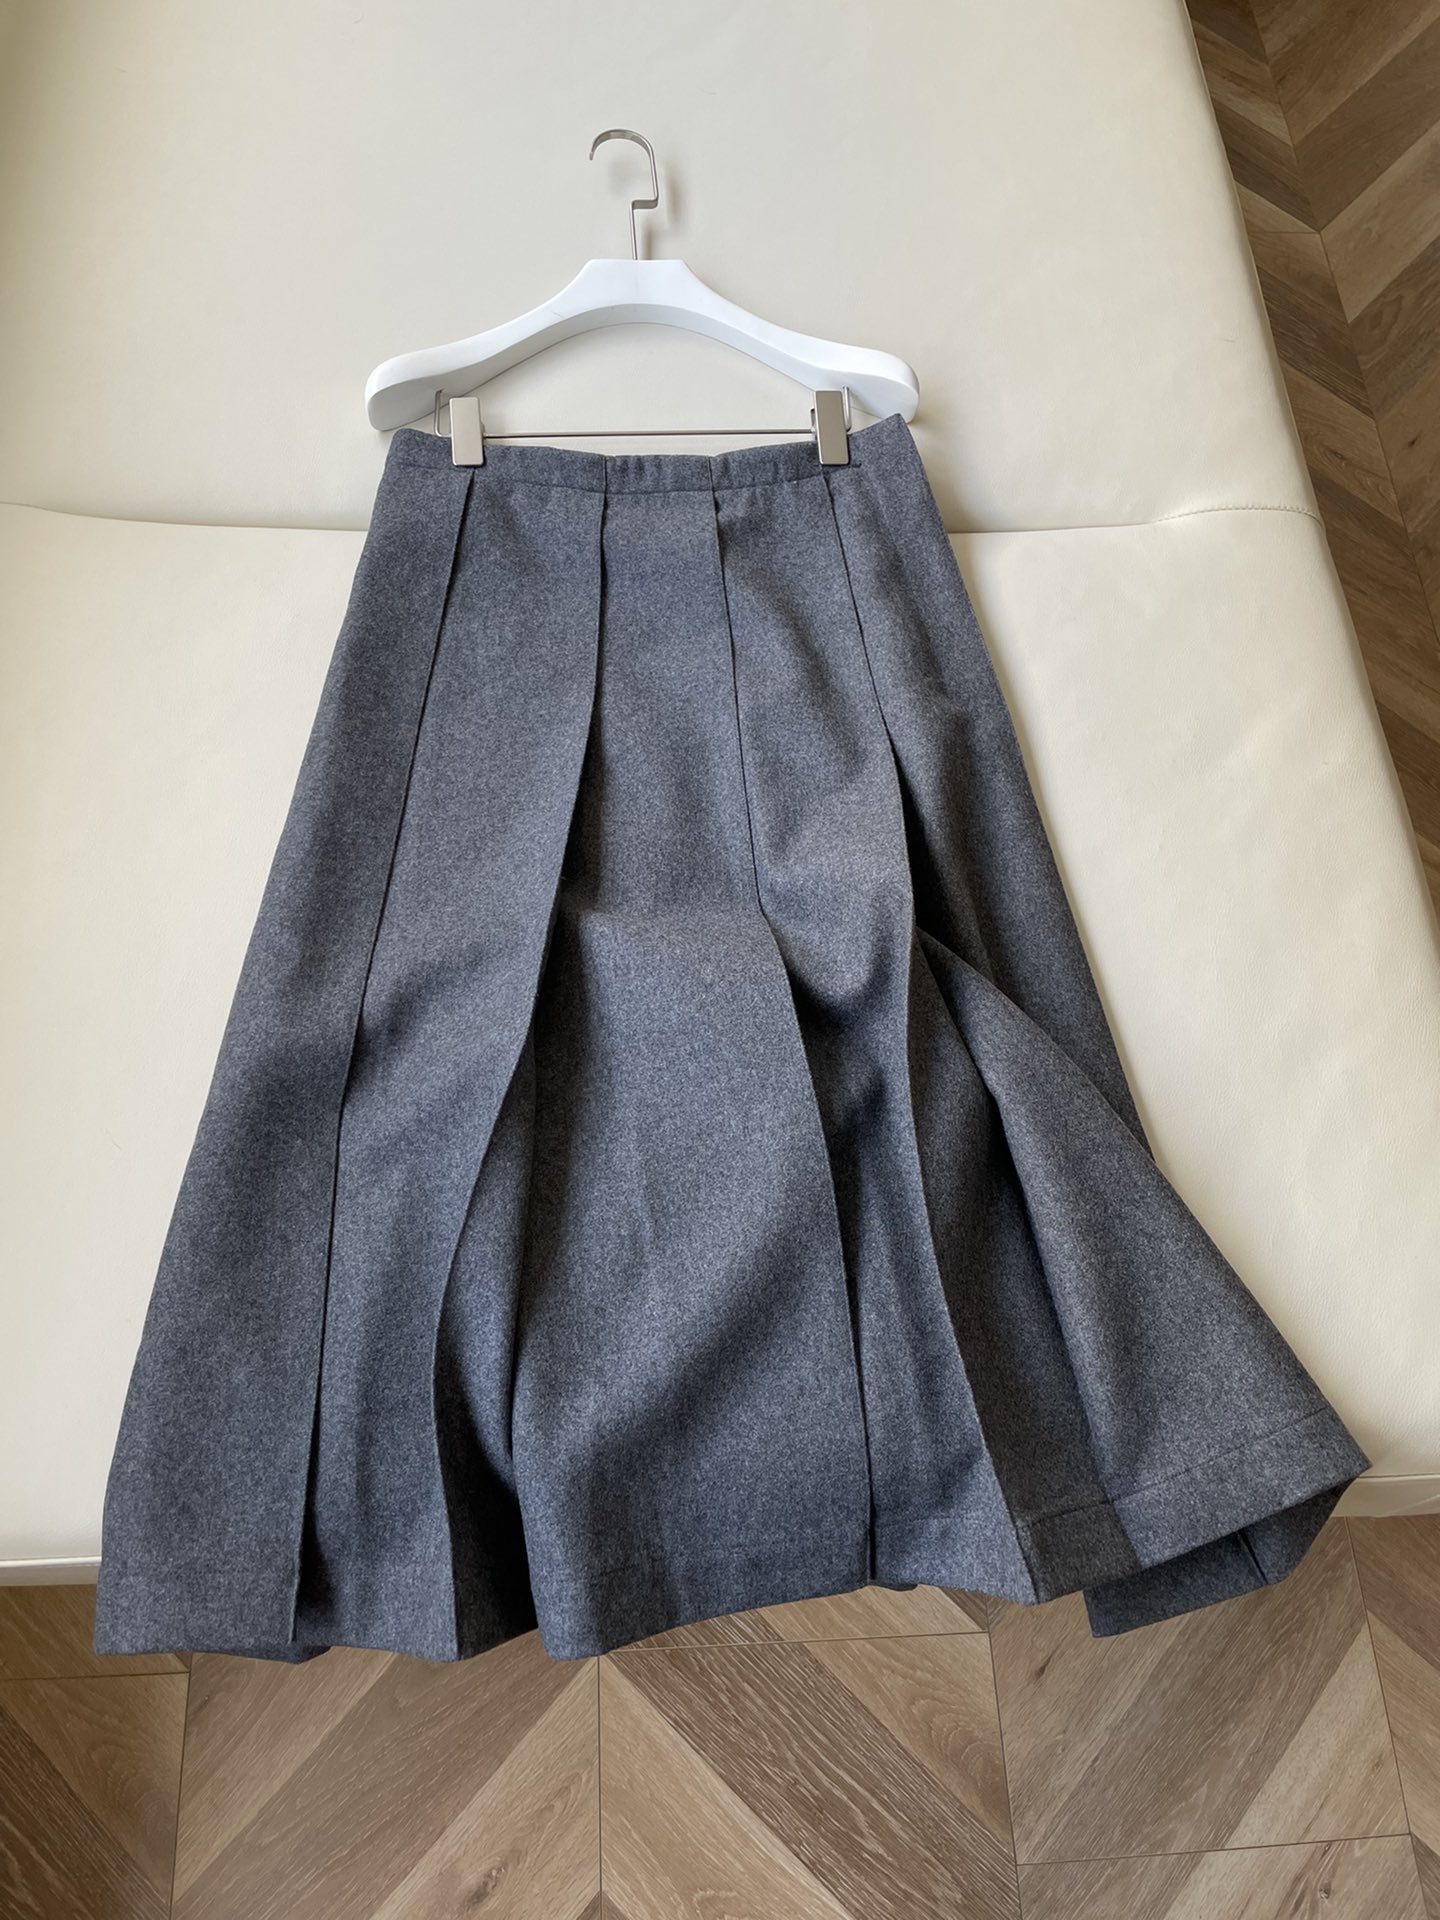 Jil Sander 羊毛宽褶半裙采用羊毛制成，利落的褶裥从宽大的下摆垂下，勾勒出简洁线条和高比例。高级流行的格雷色系，打造现代时尚的着装风格。颜色：灰色尺码：32 34 36 38